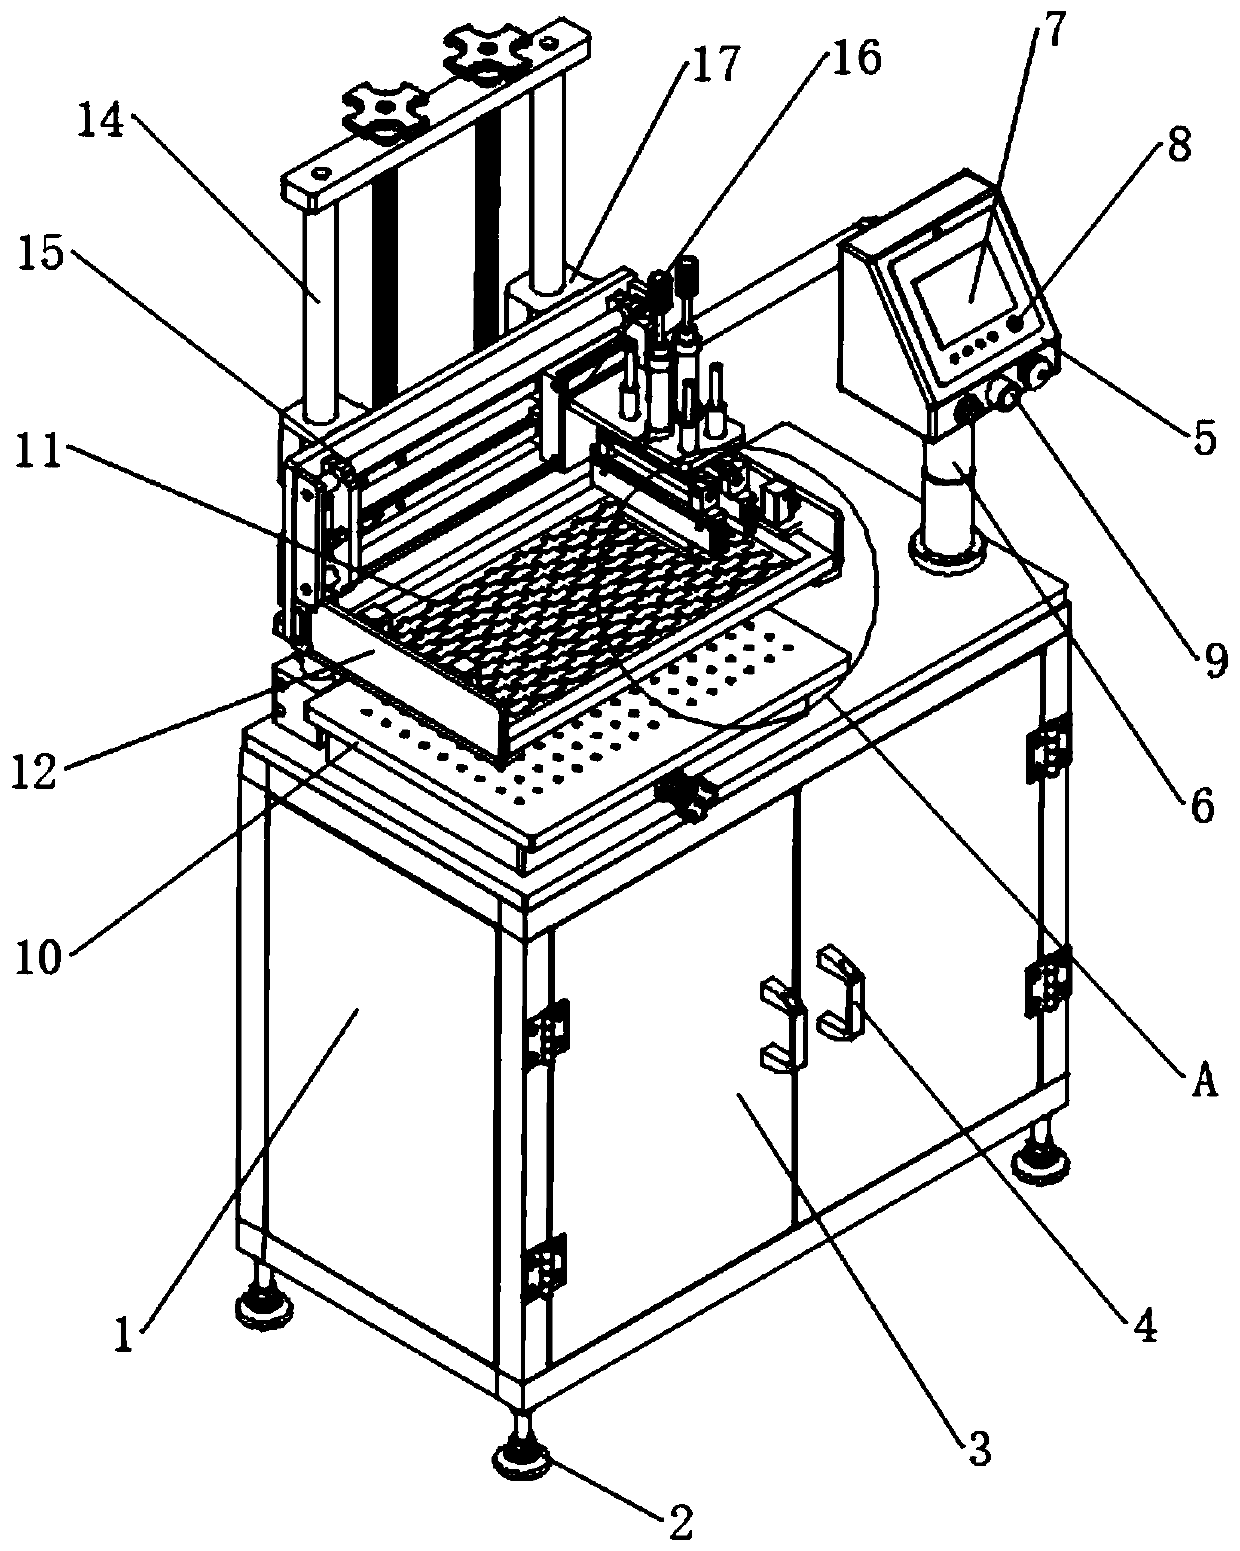 Flock print press-fit machine